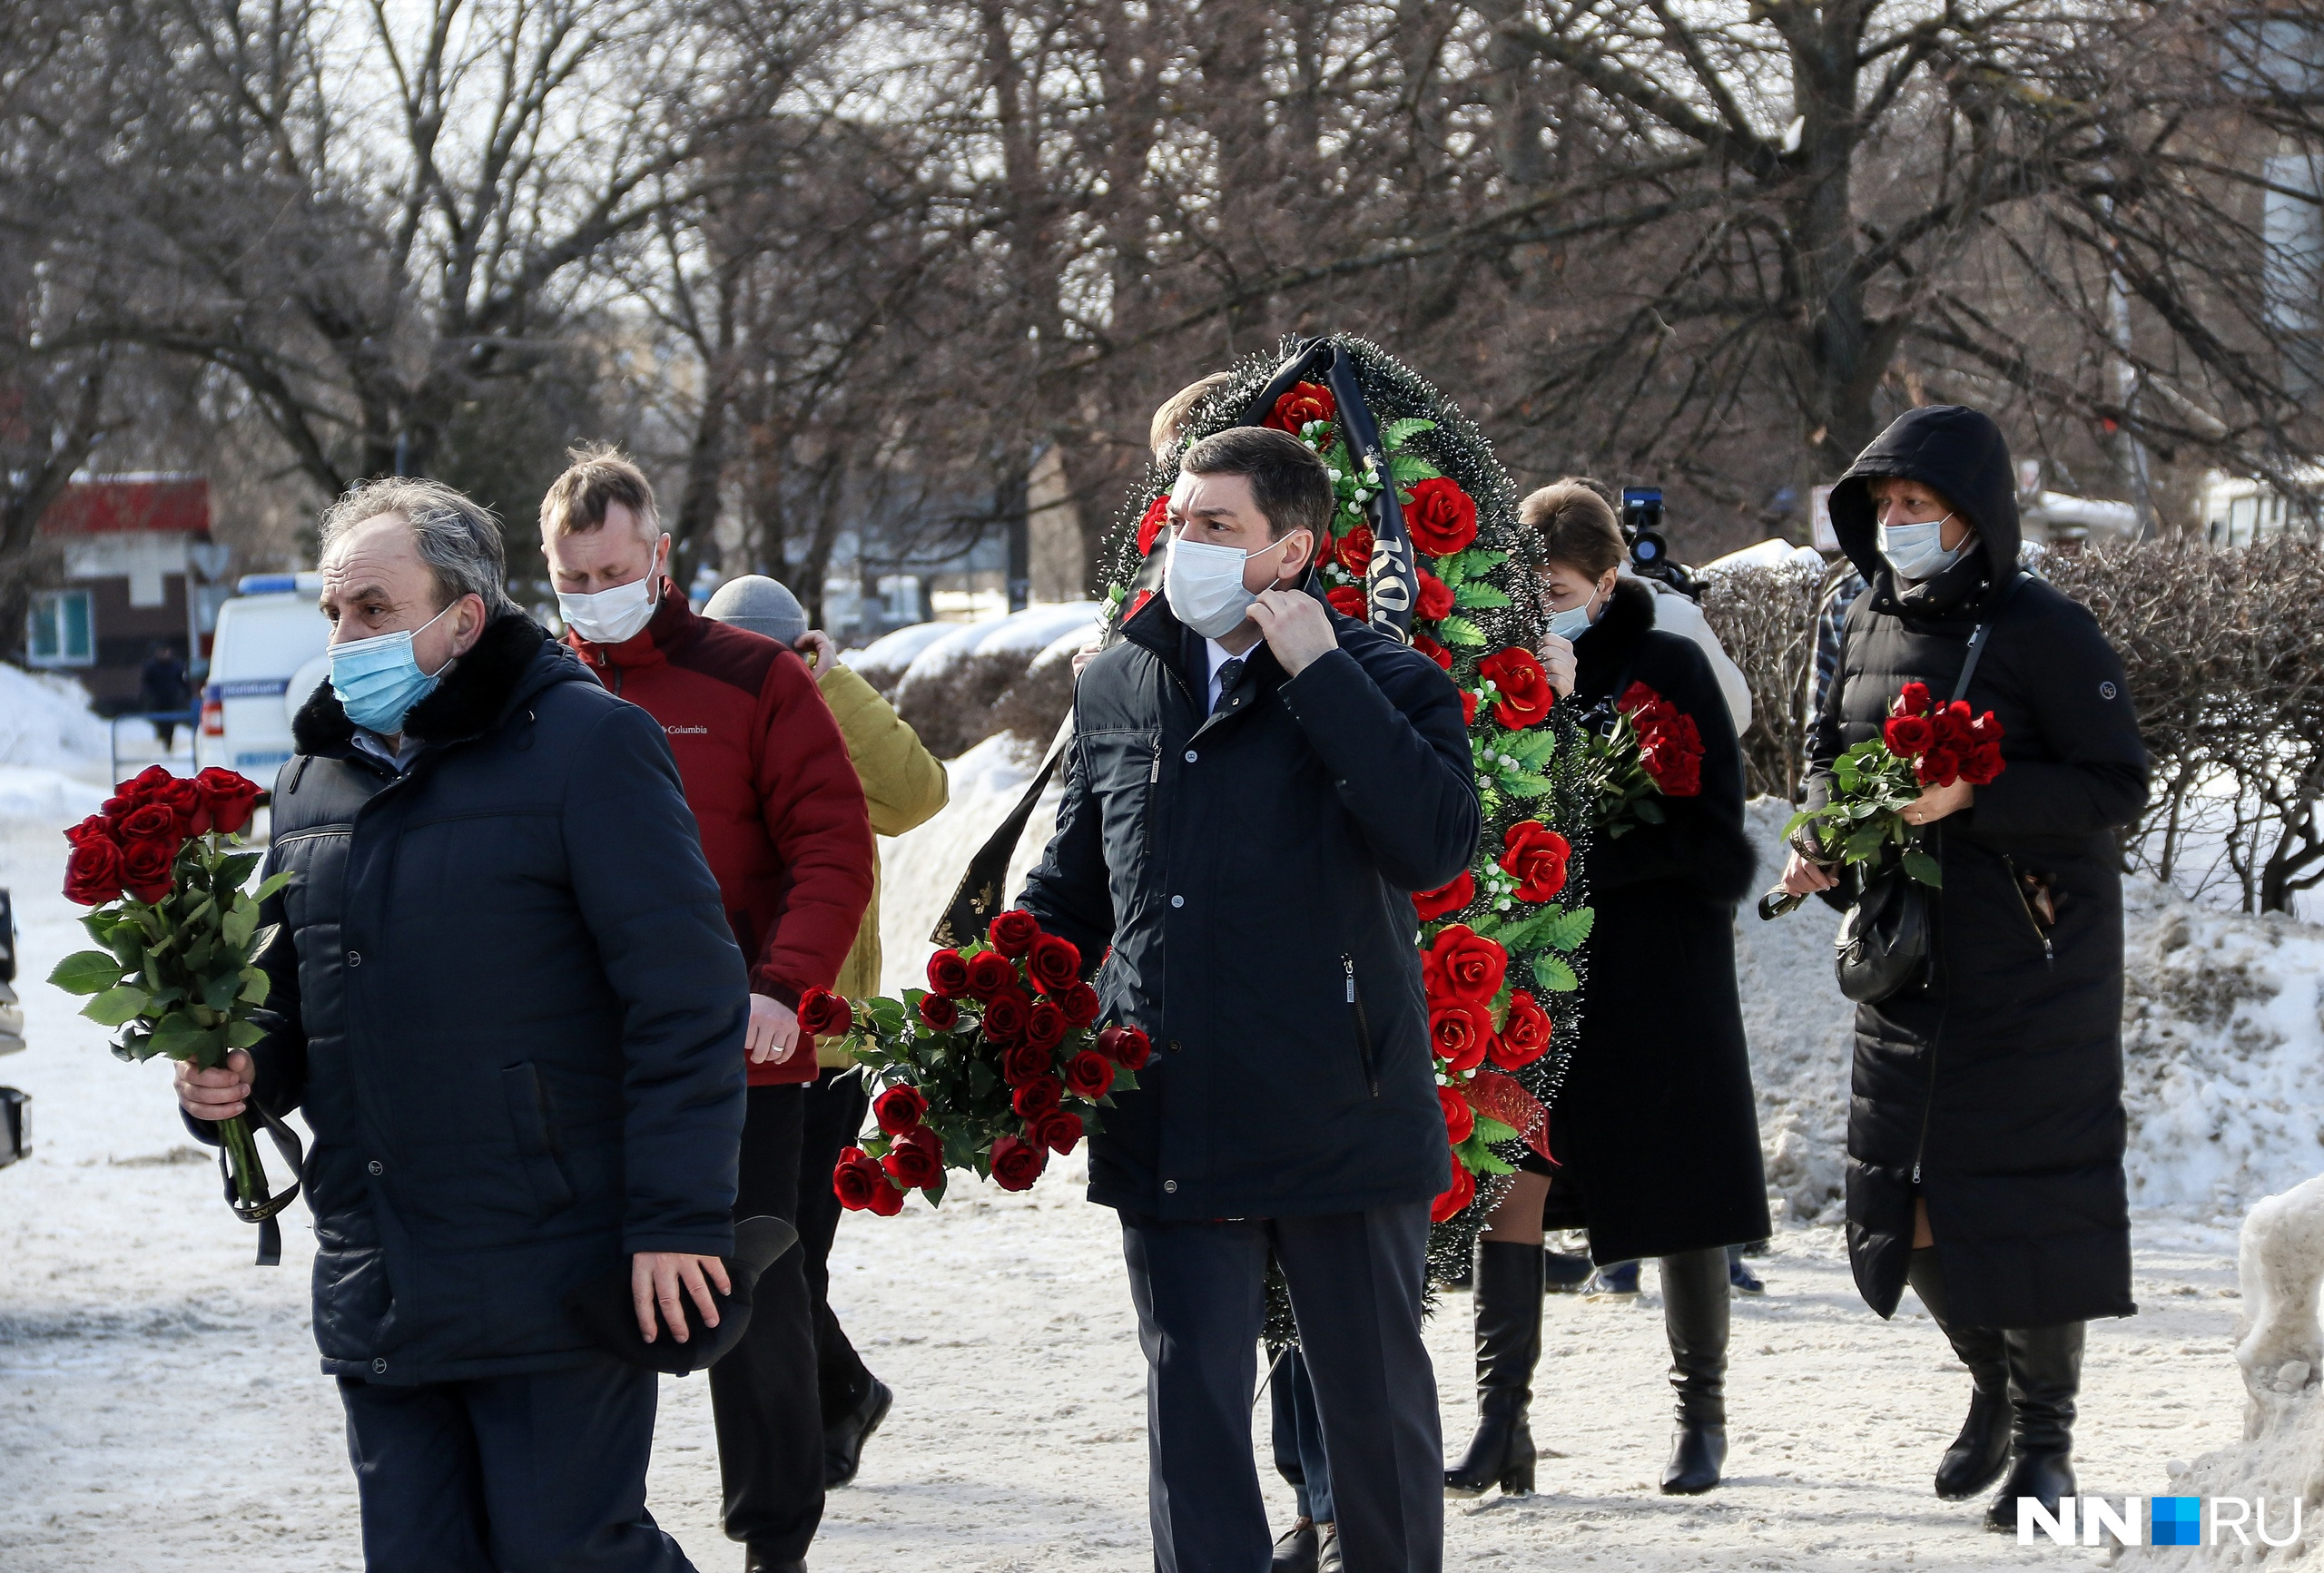 Нижнем новгороде похоронят. Похороны в Нижнем Новгороде. Похороны убитой семьи в Нижнем Новгороде.